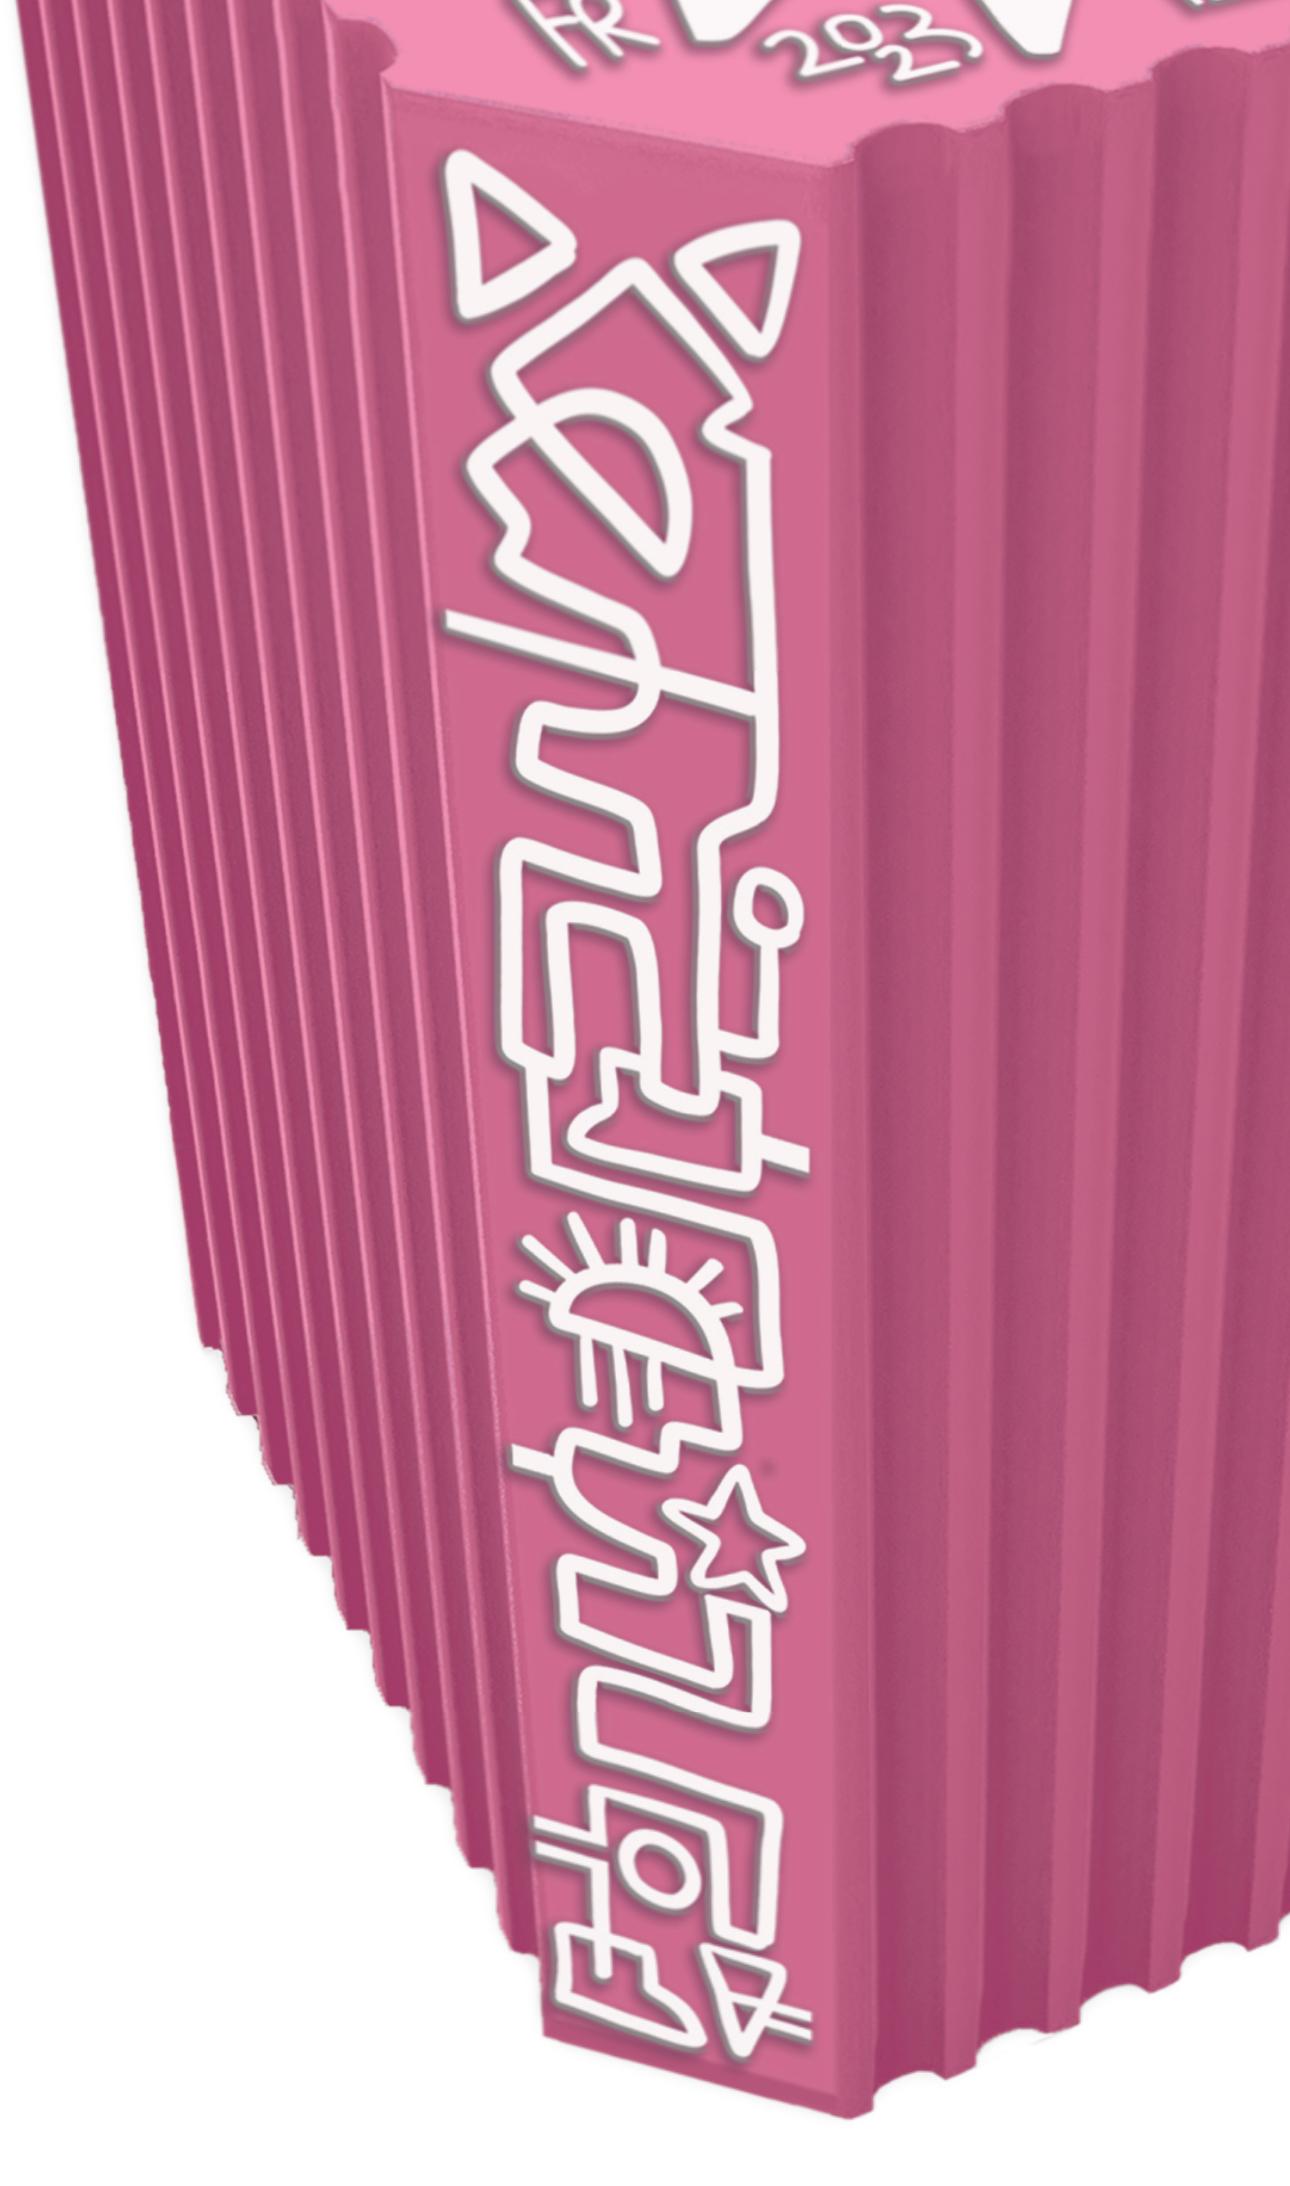 Gueridon Totem Amelia Colors 
Édition rose

Collaboration entre Jérôme Bugara et l'artiste référencée Marie Field.

Edition limitée (100 pièces) et numérotée avec certificat d'authenticité.

Finition adoucie avec base cannelée inversée.

Gravure